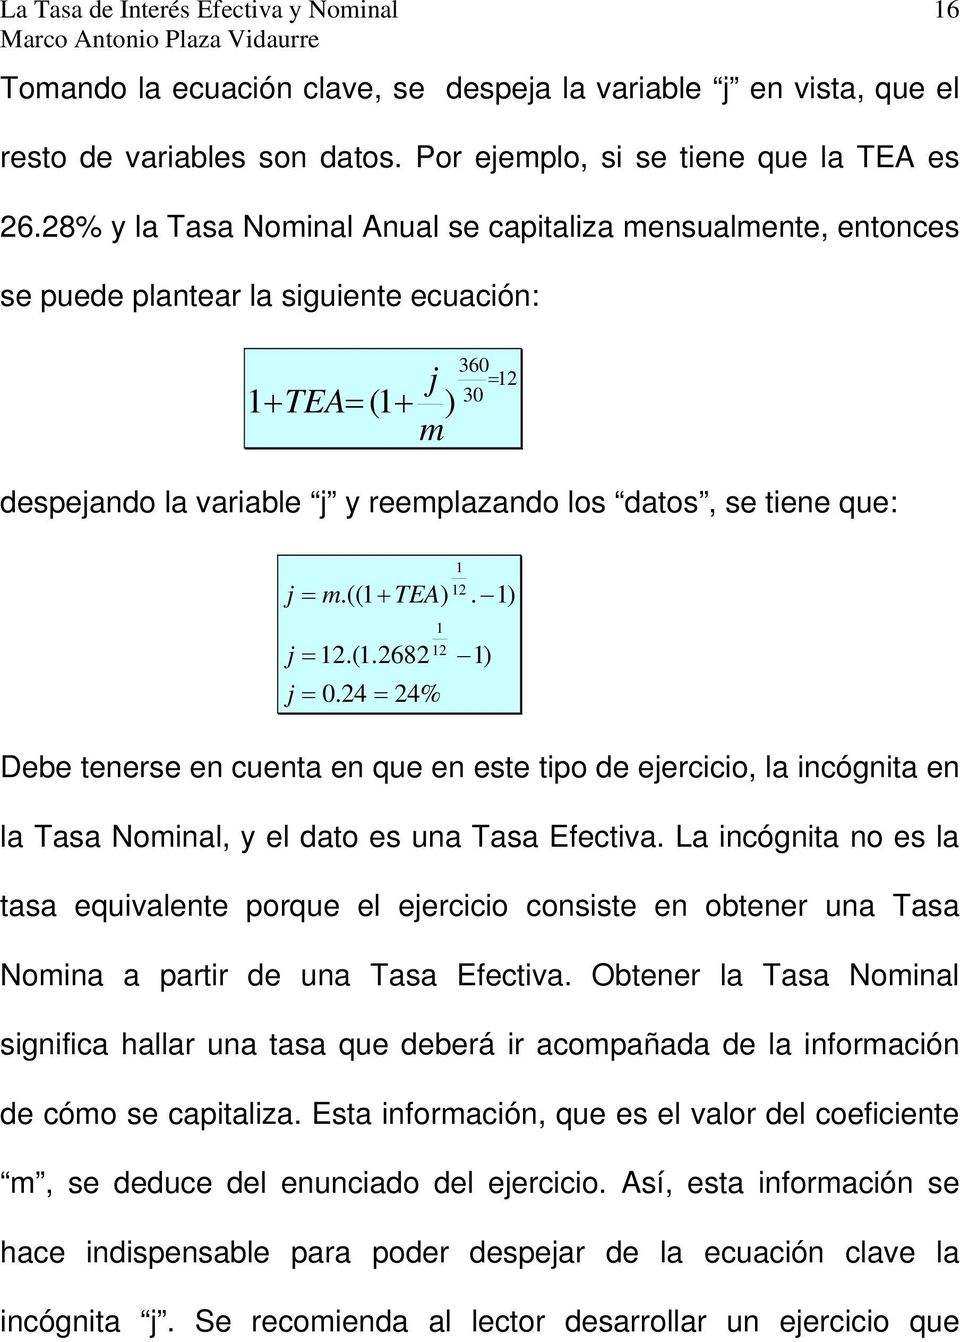 tiene que: j = m.((1 + TEA) j = 12.(1.2682 12 j = 0.24 = 24% 1 1 12. 1) 1) Debe tenerse en cuenta en que en este tipo de ejercicio, la incógnita en la Tasa Nominal, y el dato es una Tasa Efectiva.